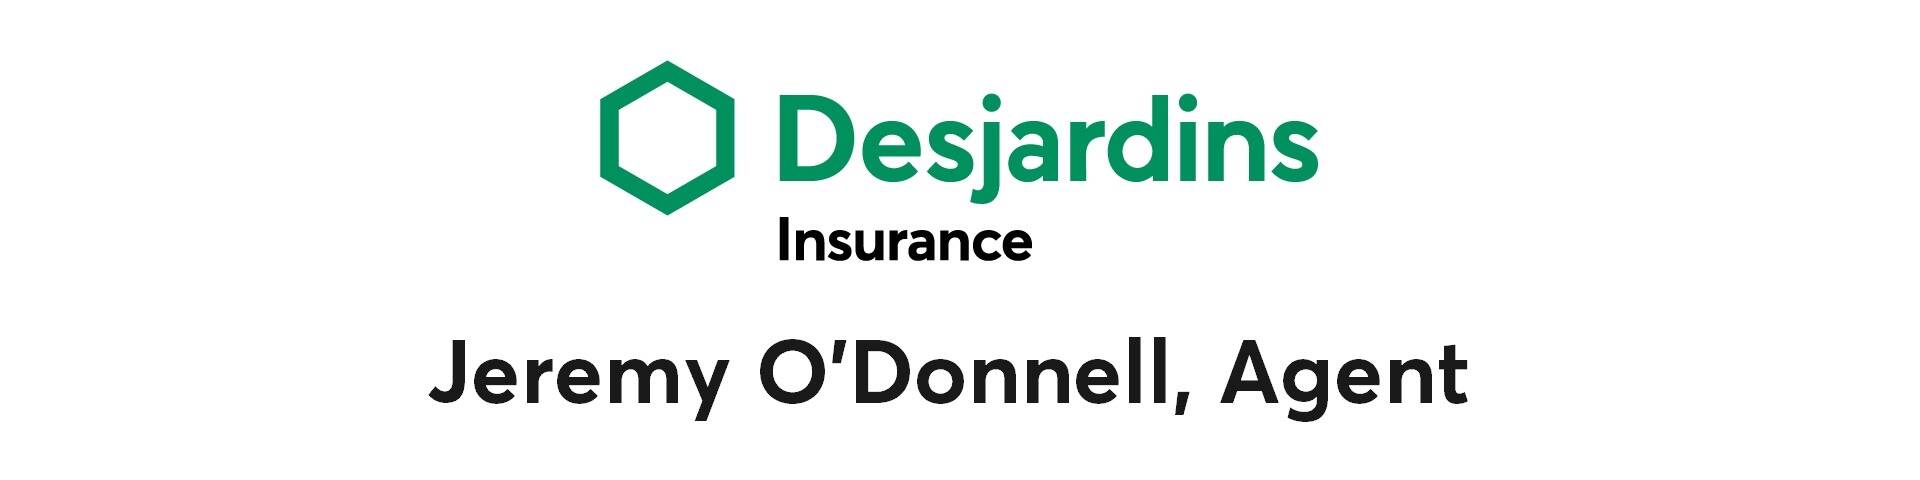 Desjardins Insurance-Jeremy O'Donnell